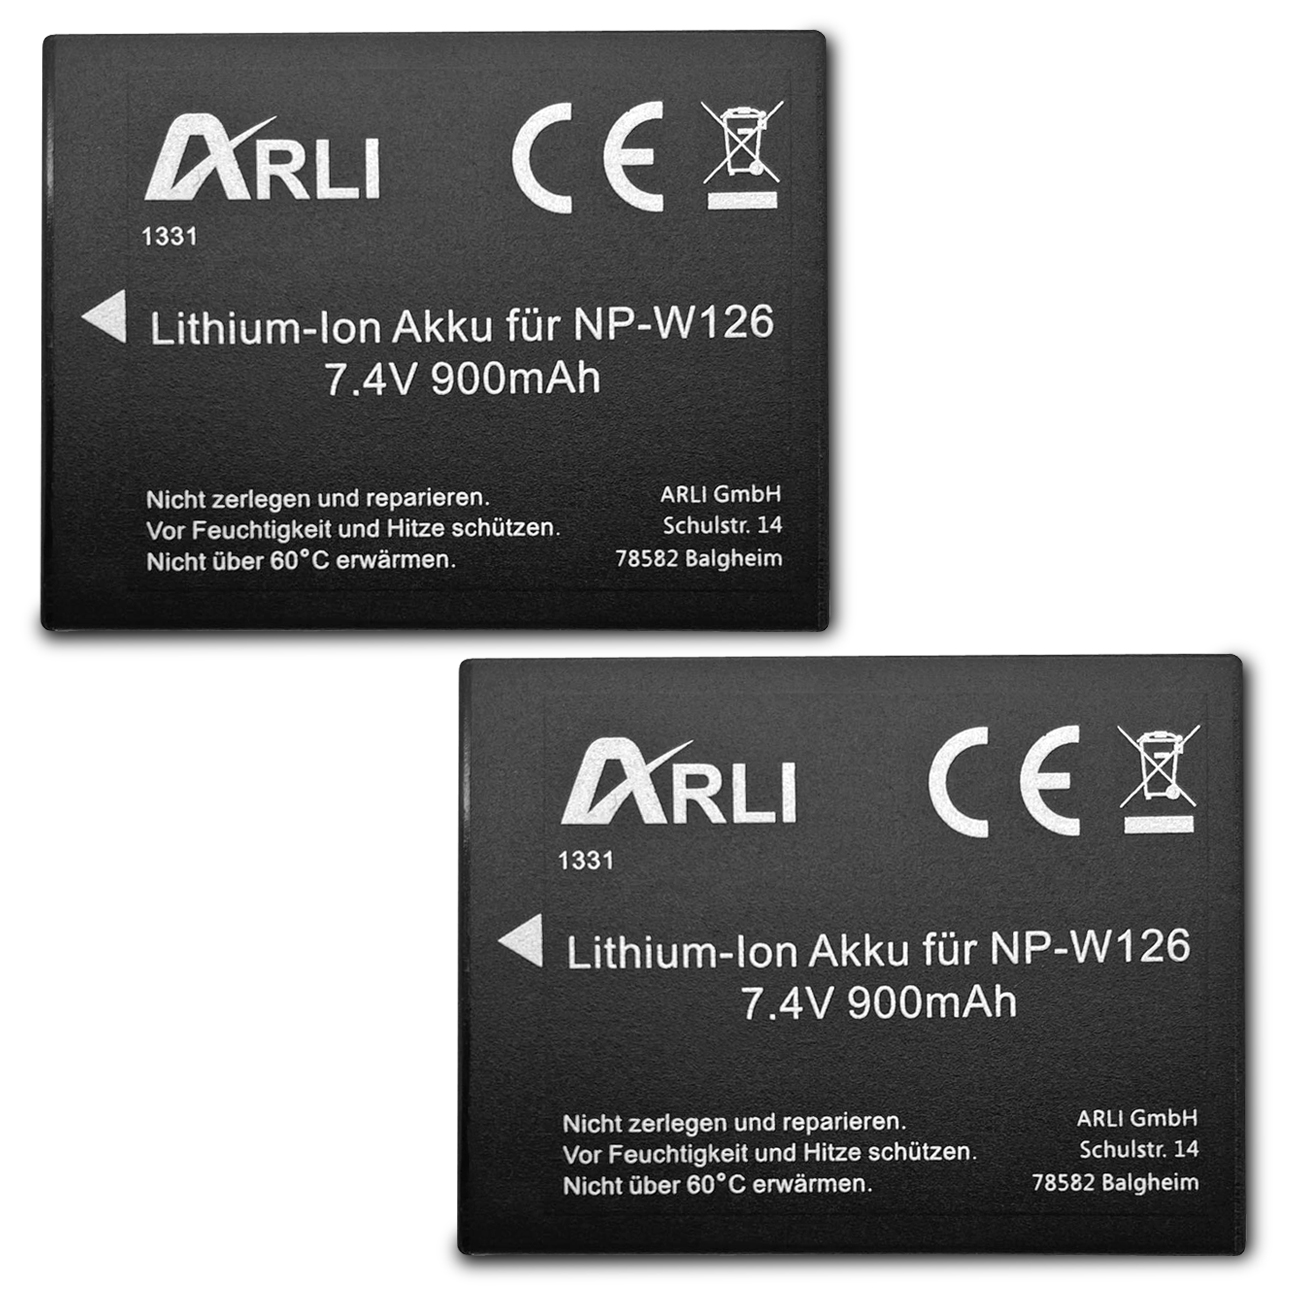 ARLI Akku für Akku, mAh NP-W126s 900 / Kamera Stück 2 Volt, NP-W126 Li-Ion 7.2 Fuji